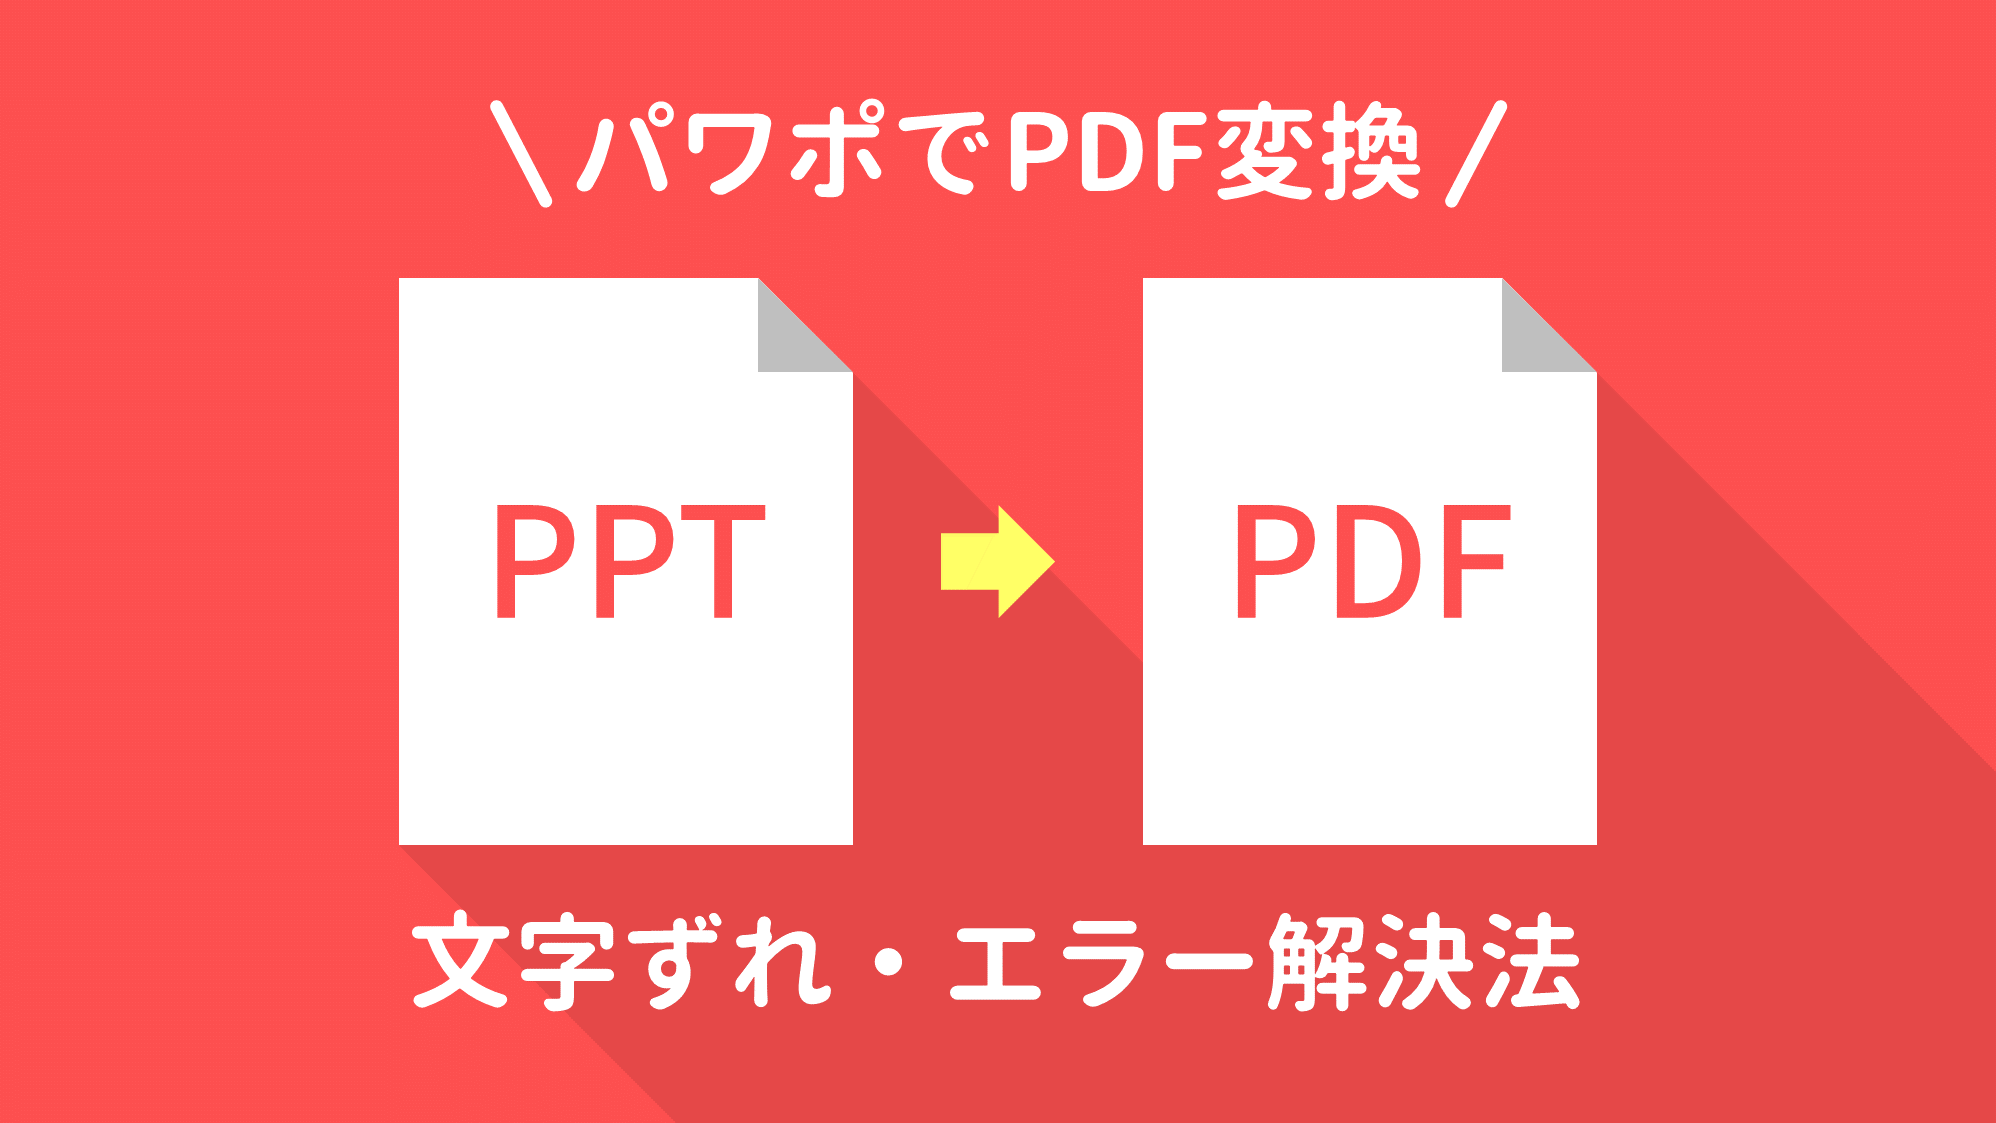 Powerpointでpdf変換時の文字ずれ エラー解決法 Ppdtp